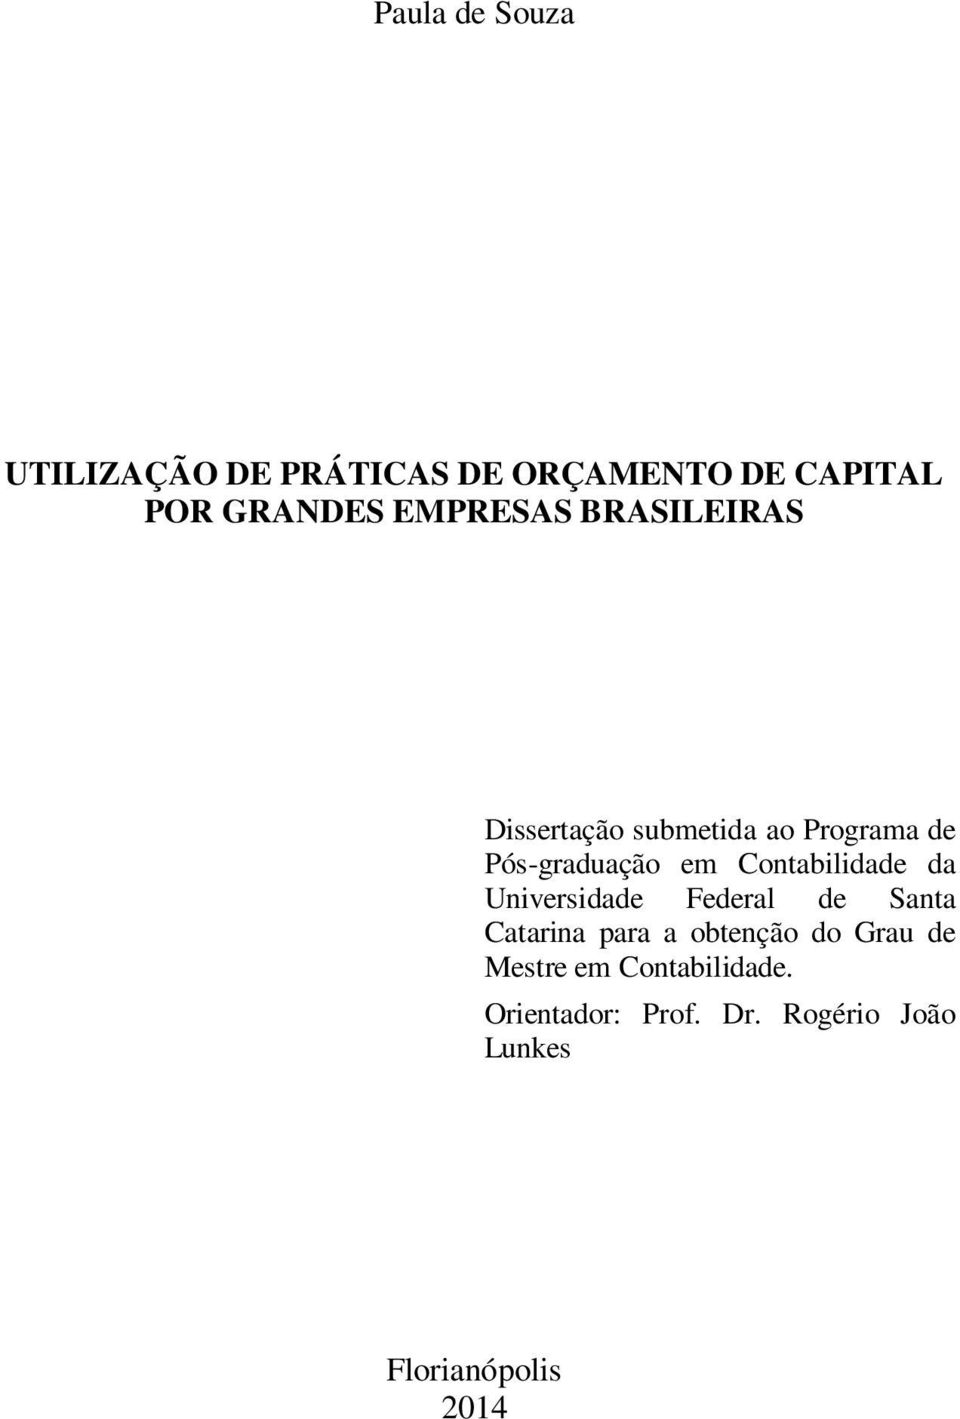 Contabilidade da Universidade Federal de Santa Catarina para a obtenção do Grau